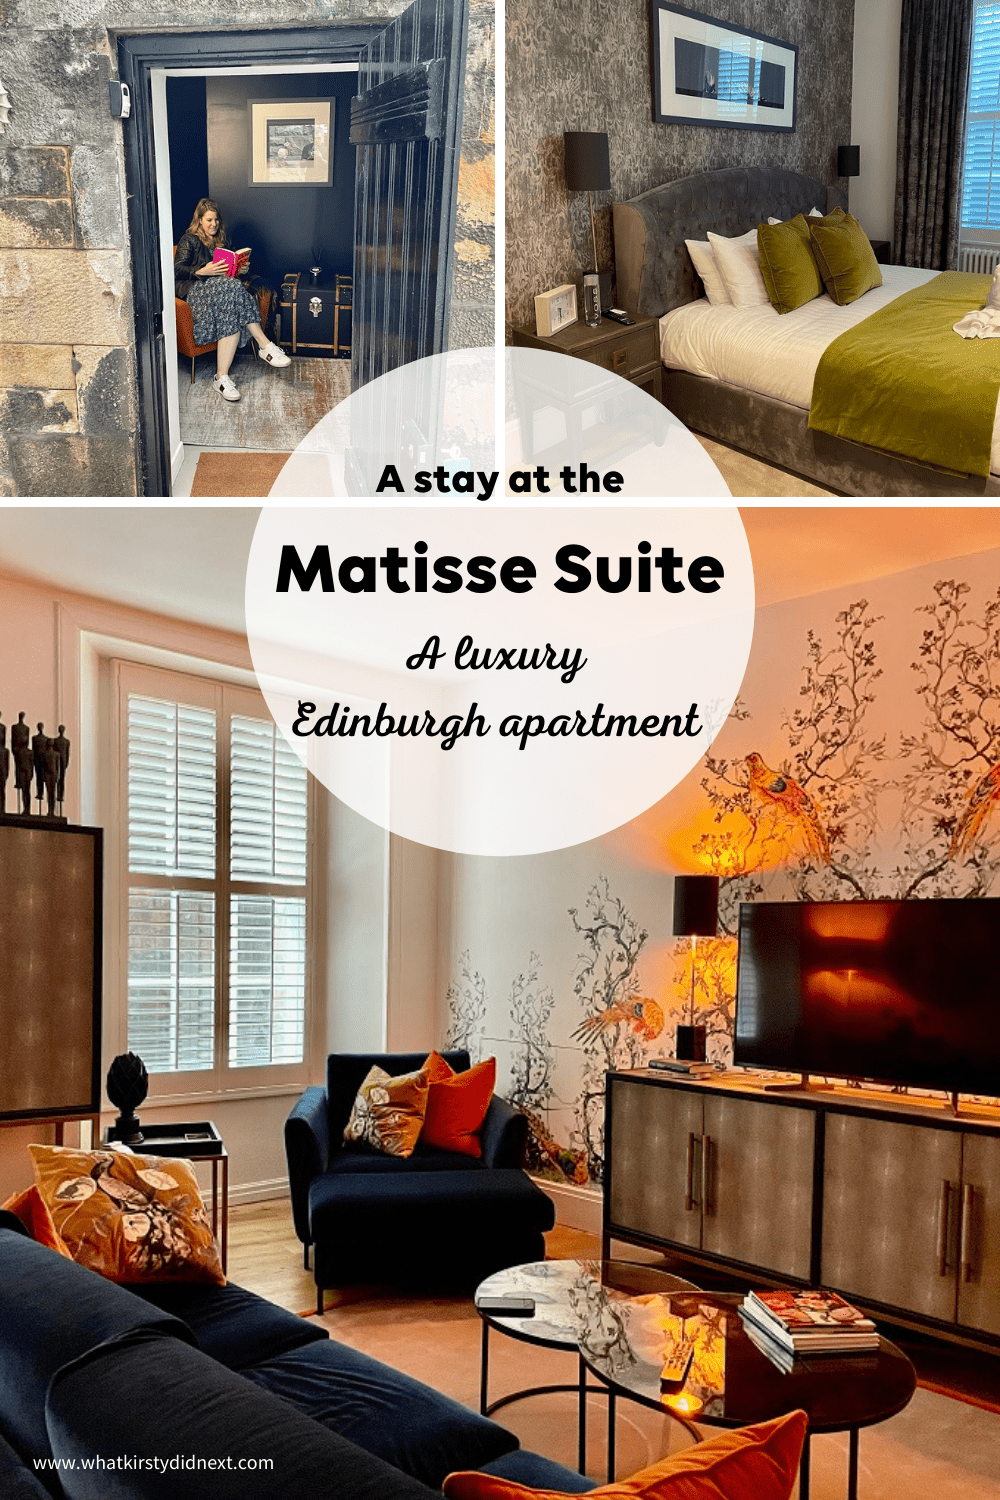 The Matisse Suite Edinburgh